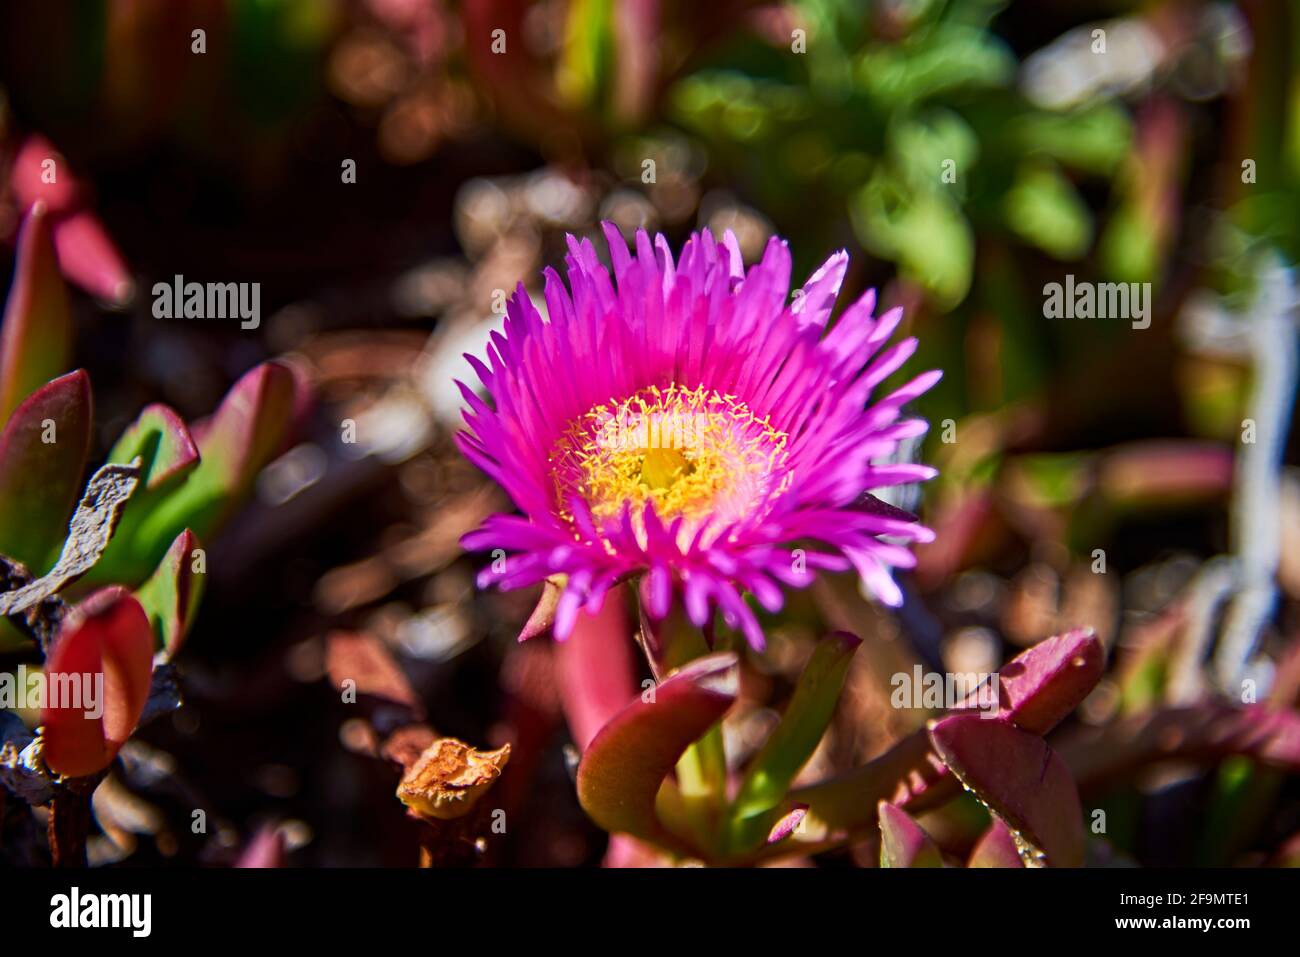 Hardy Ice pianta succulente costiera con fiori rosa e giallo Foto Stock